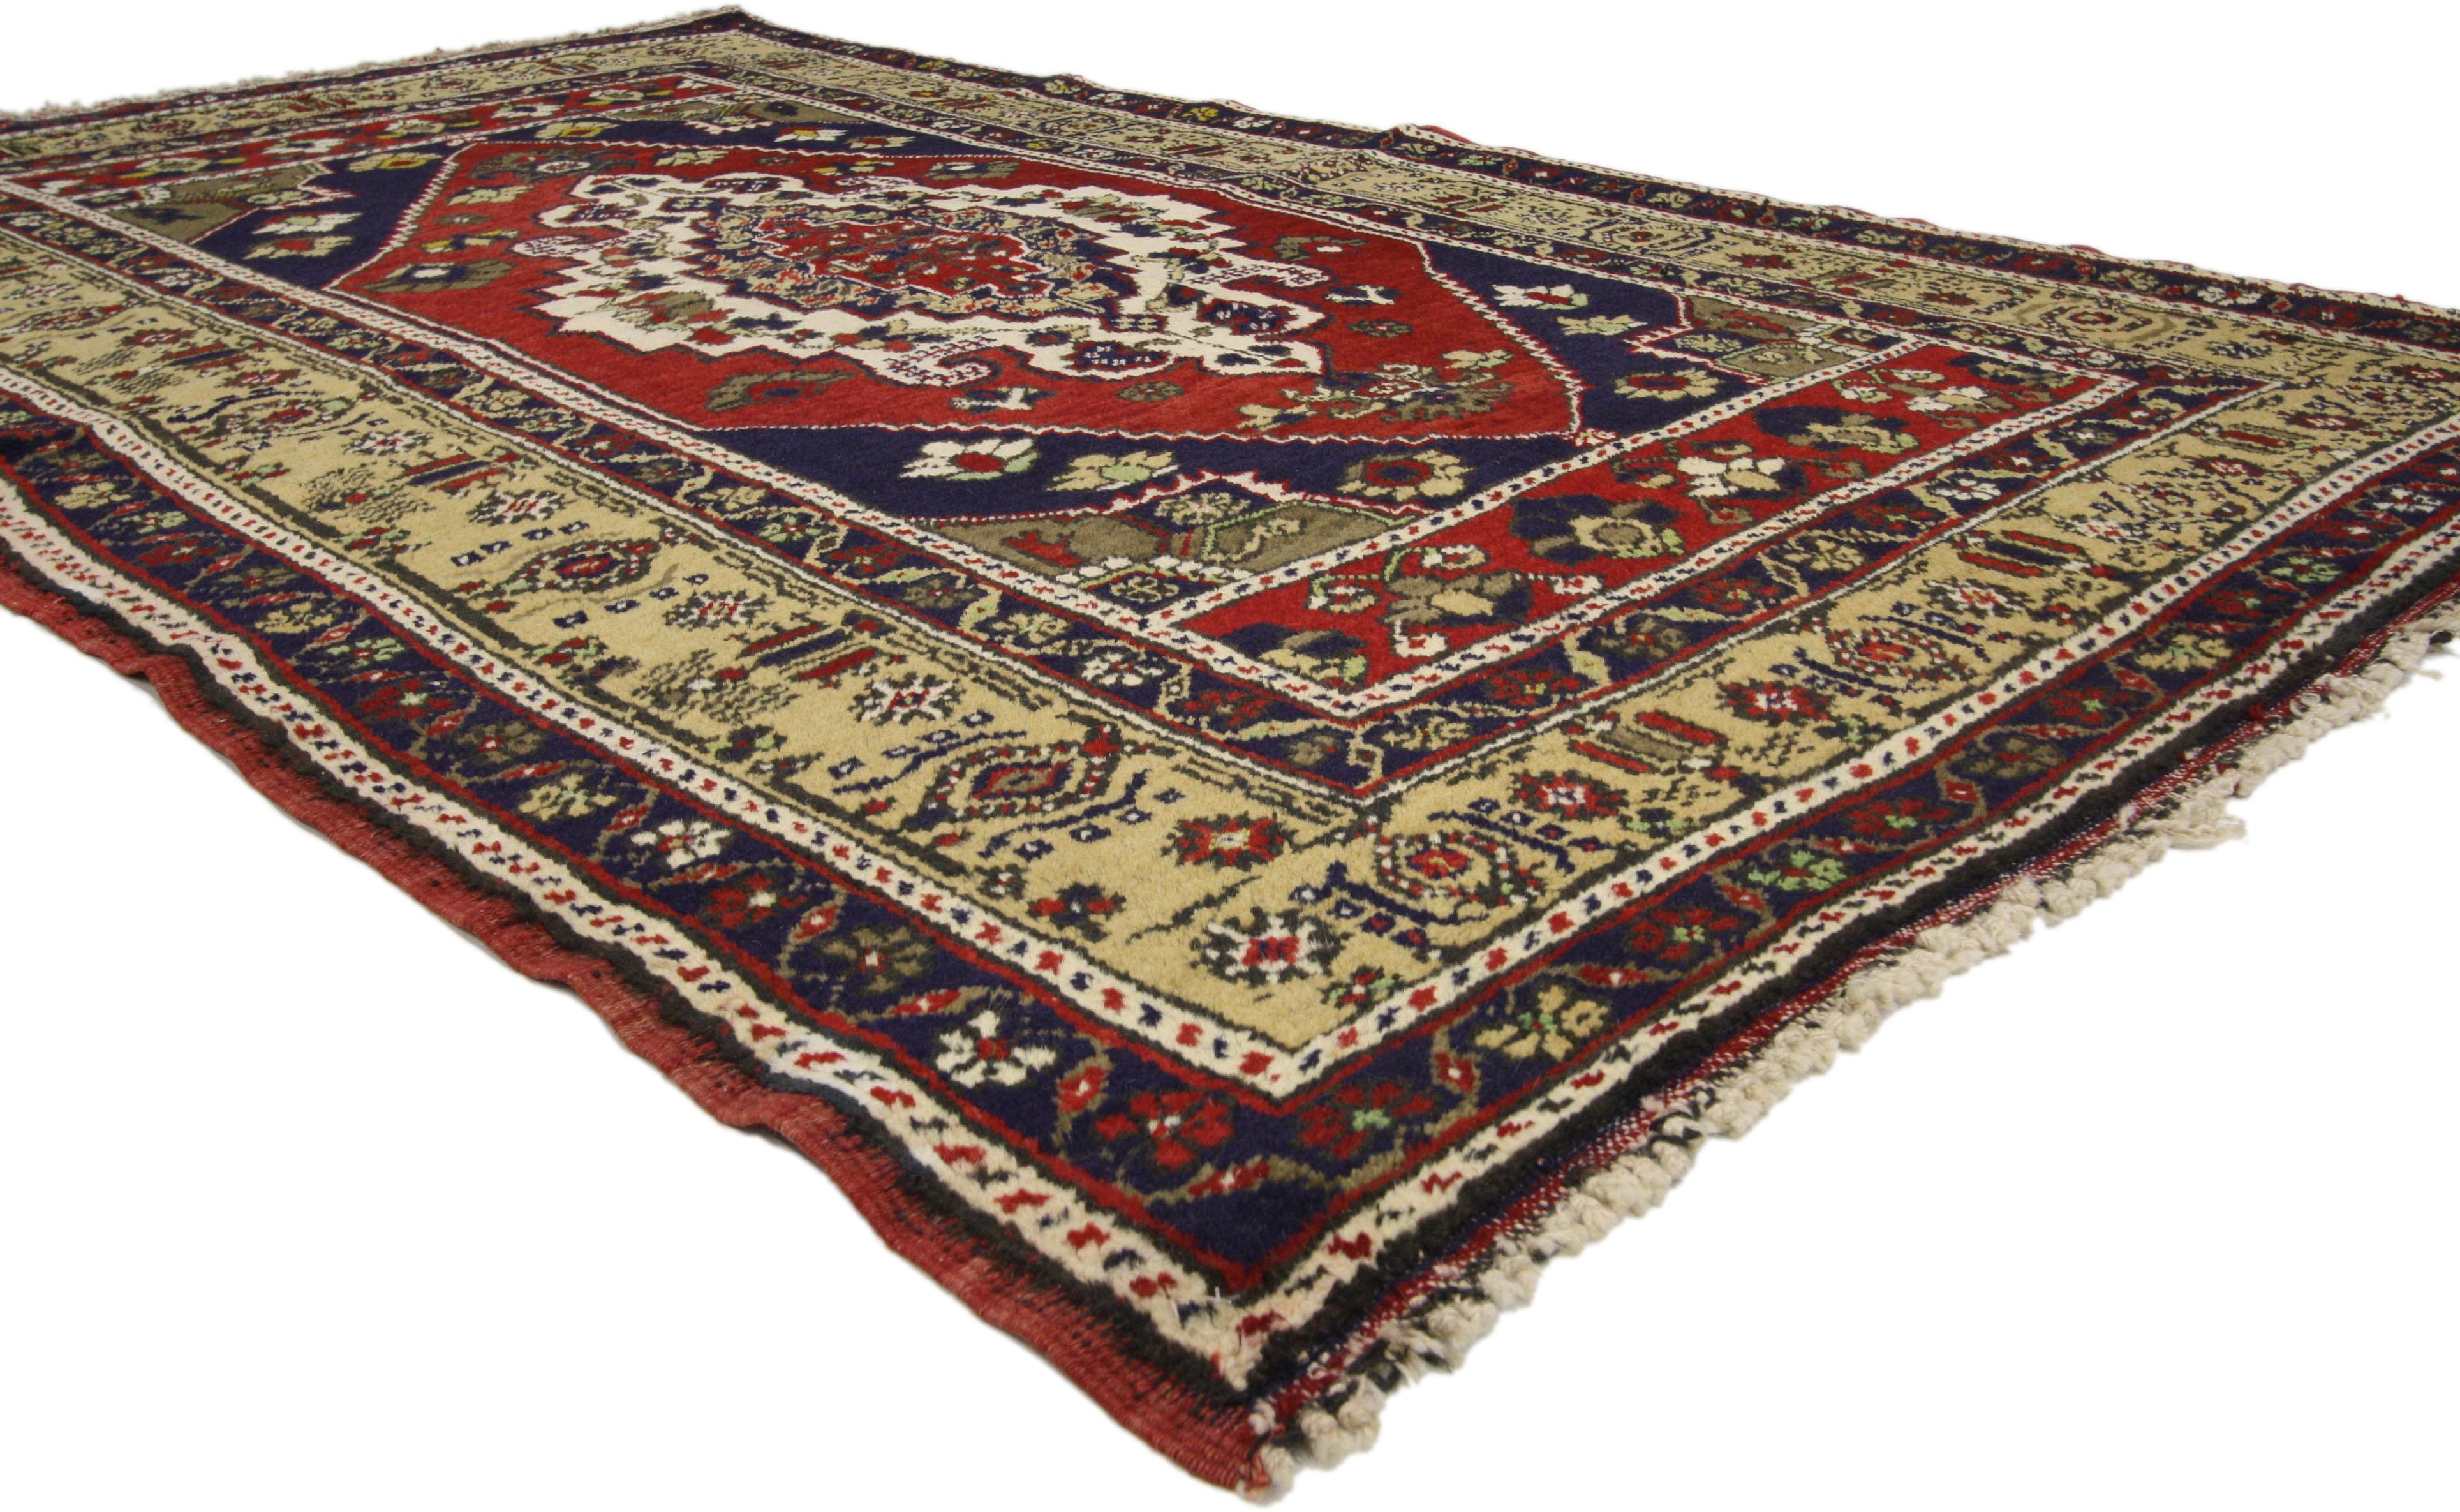 72689 Türkischer Oushak Teppich mit luxuriösem mittelalterlichen Stil, breiter Läufer für den Flur. Dieser handgeknüpfte Oushak-Teppich im mittelalterlichen Luxe-Stil aus Wolle, der in die anatolische Geschichte, den Detailreichtum und die